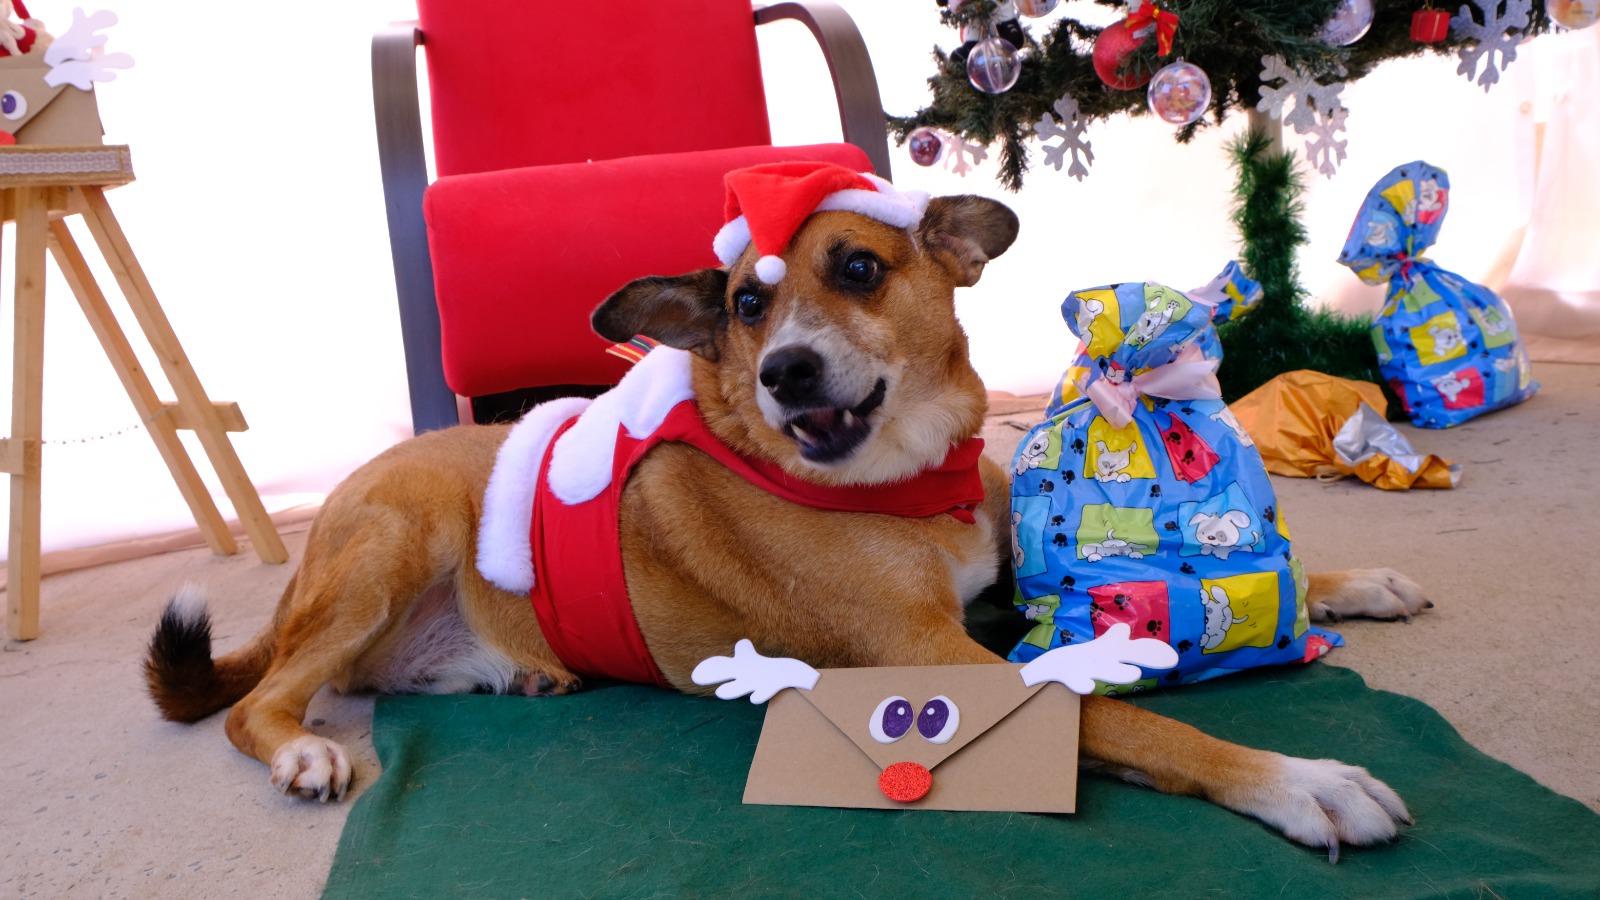 A foto mostra Gordo, um cão sem raça definida de cor caramelo e patas, focinho e peito brancos; ele está deitado e caracterizado como Papai Noel, com um gorro e roupinha vermelhos, tendo ao fundo uma árvore de Natal e uma poltrona, também vermelha